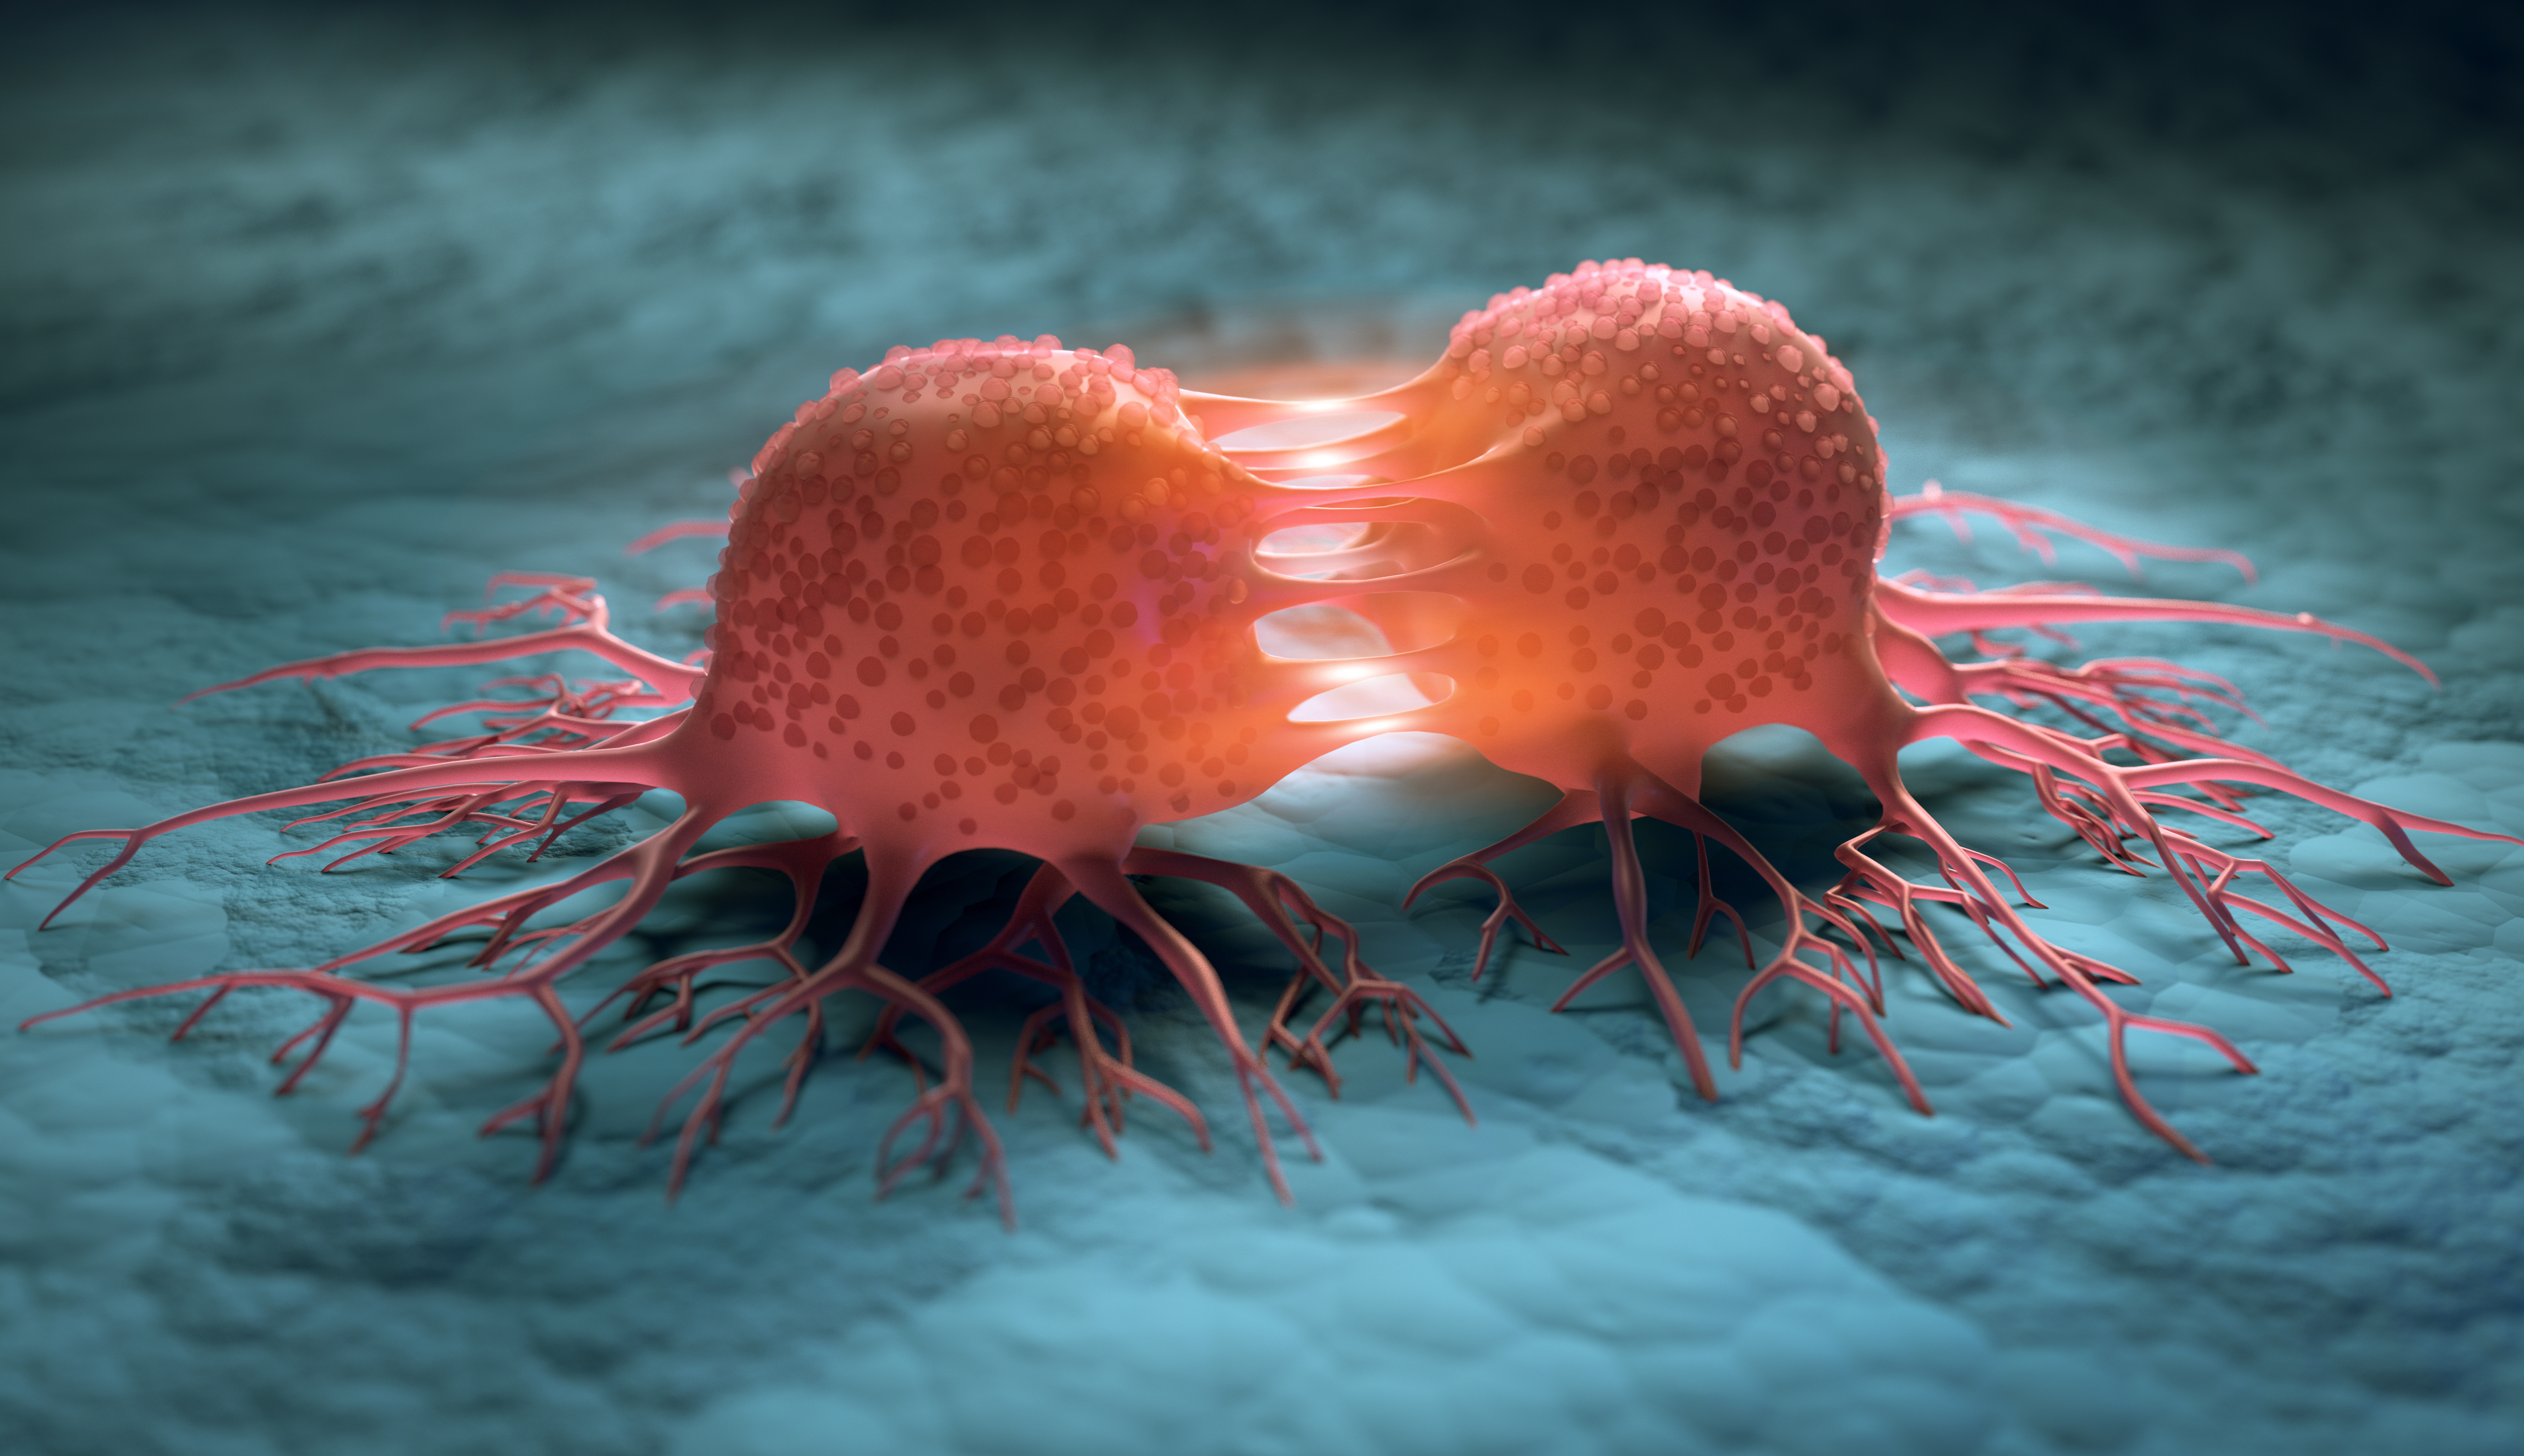  Les cellules cancéreuses ont un taux de prolifération anormal et perte la capacité d'apoptose © peterschreiber.media, Adobe Stock